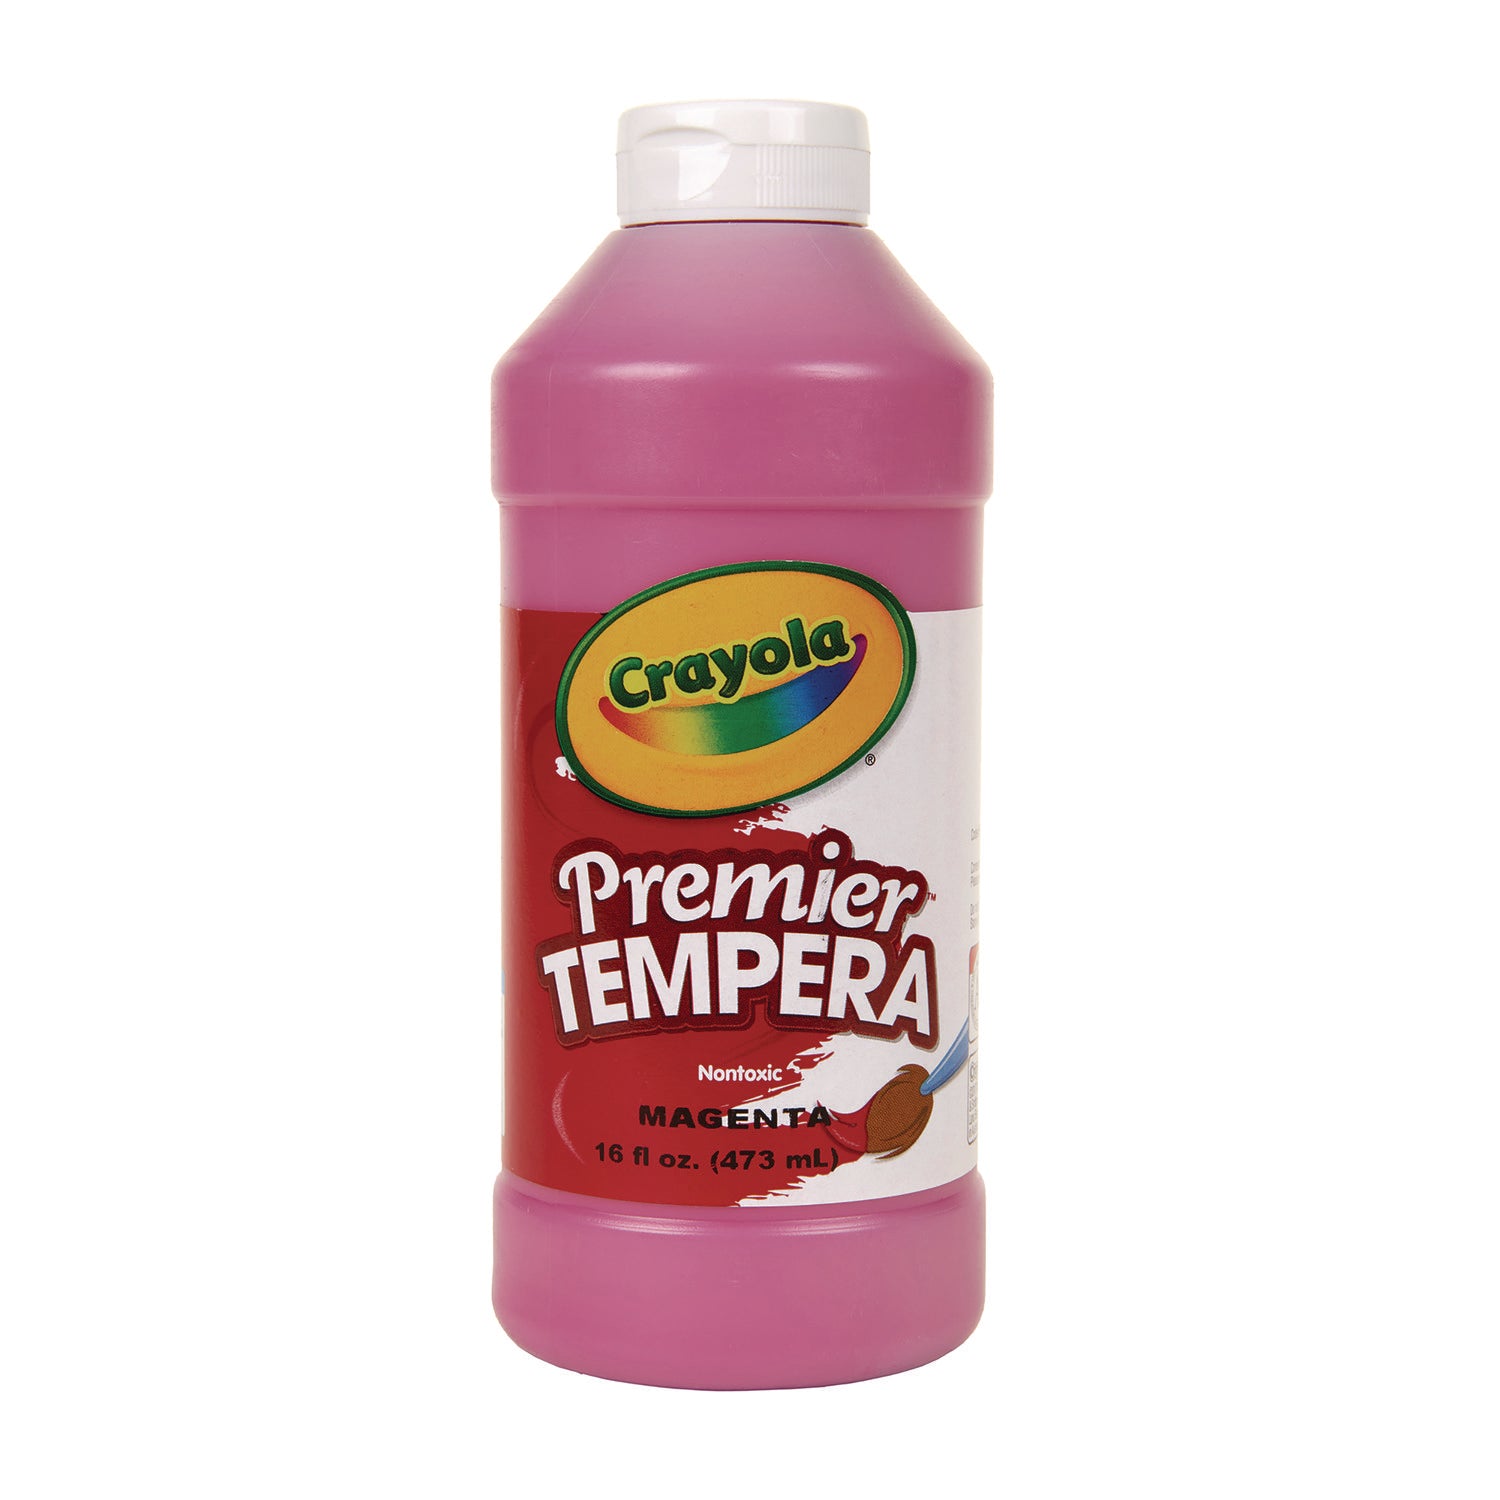 Premier Tempera Paint, Magenta, 16 oz Bottle - 